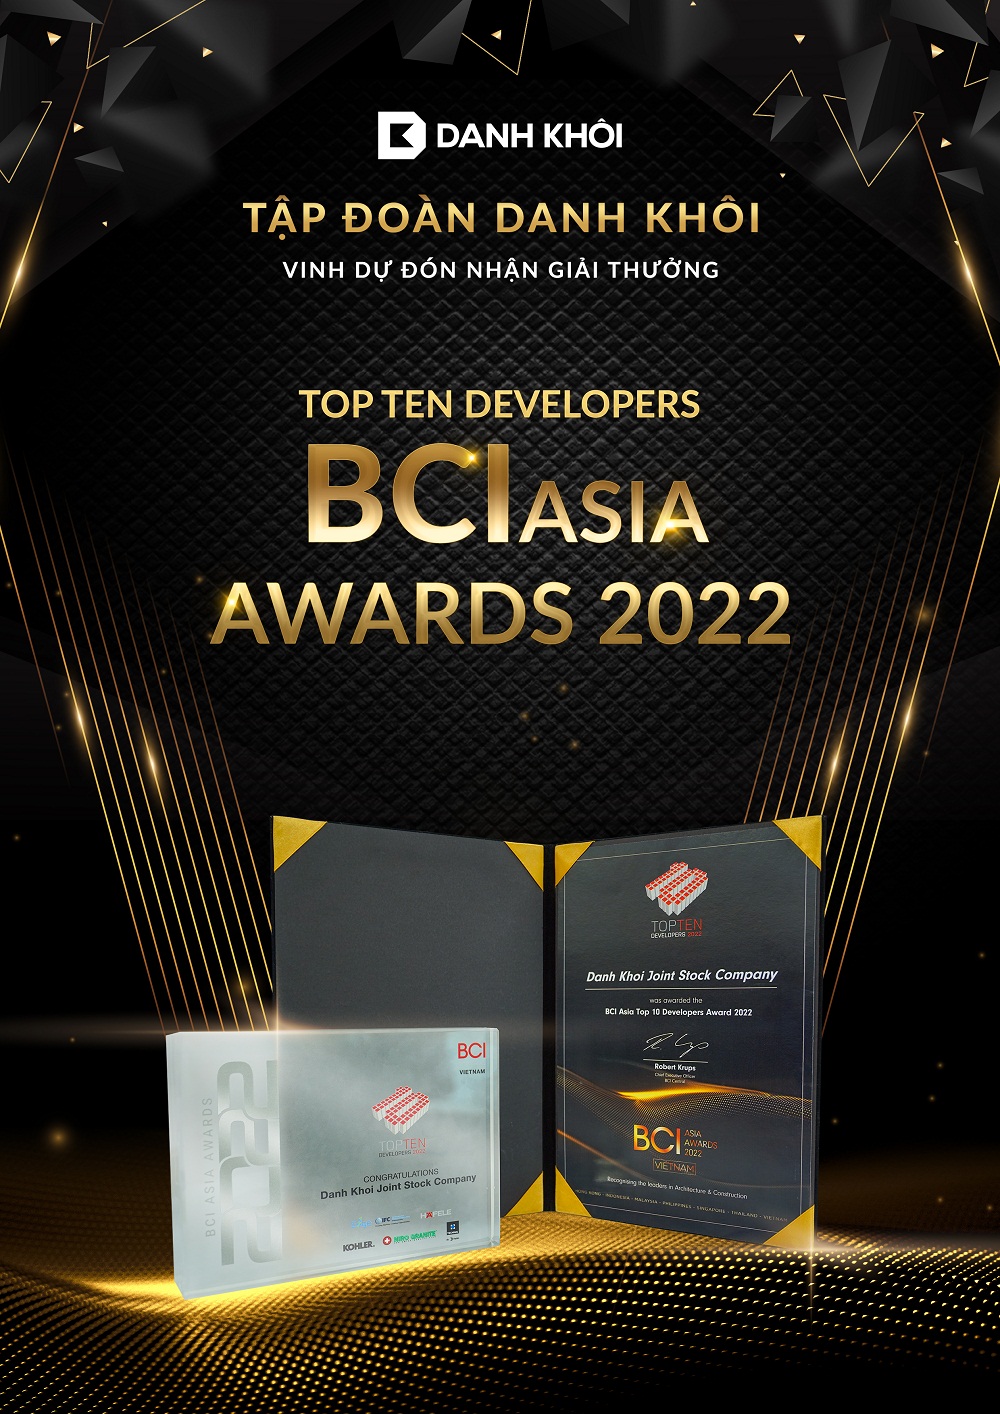 Năm 2022 là năm đầu tiên Tập đoàn Danh Khôi tham dự và vinh dự đón nhận giải thưởng danh giá bậc nhất khu vực từ BCI Asia Awards